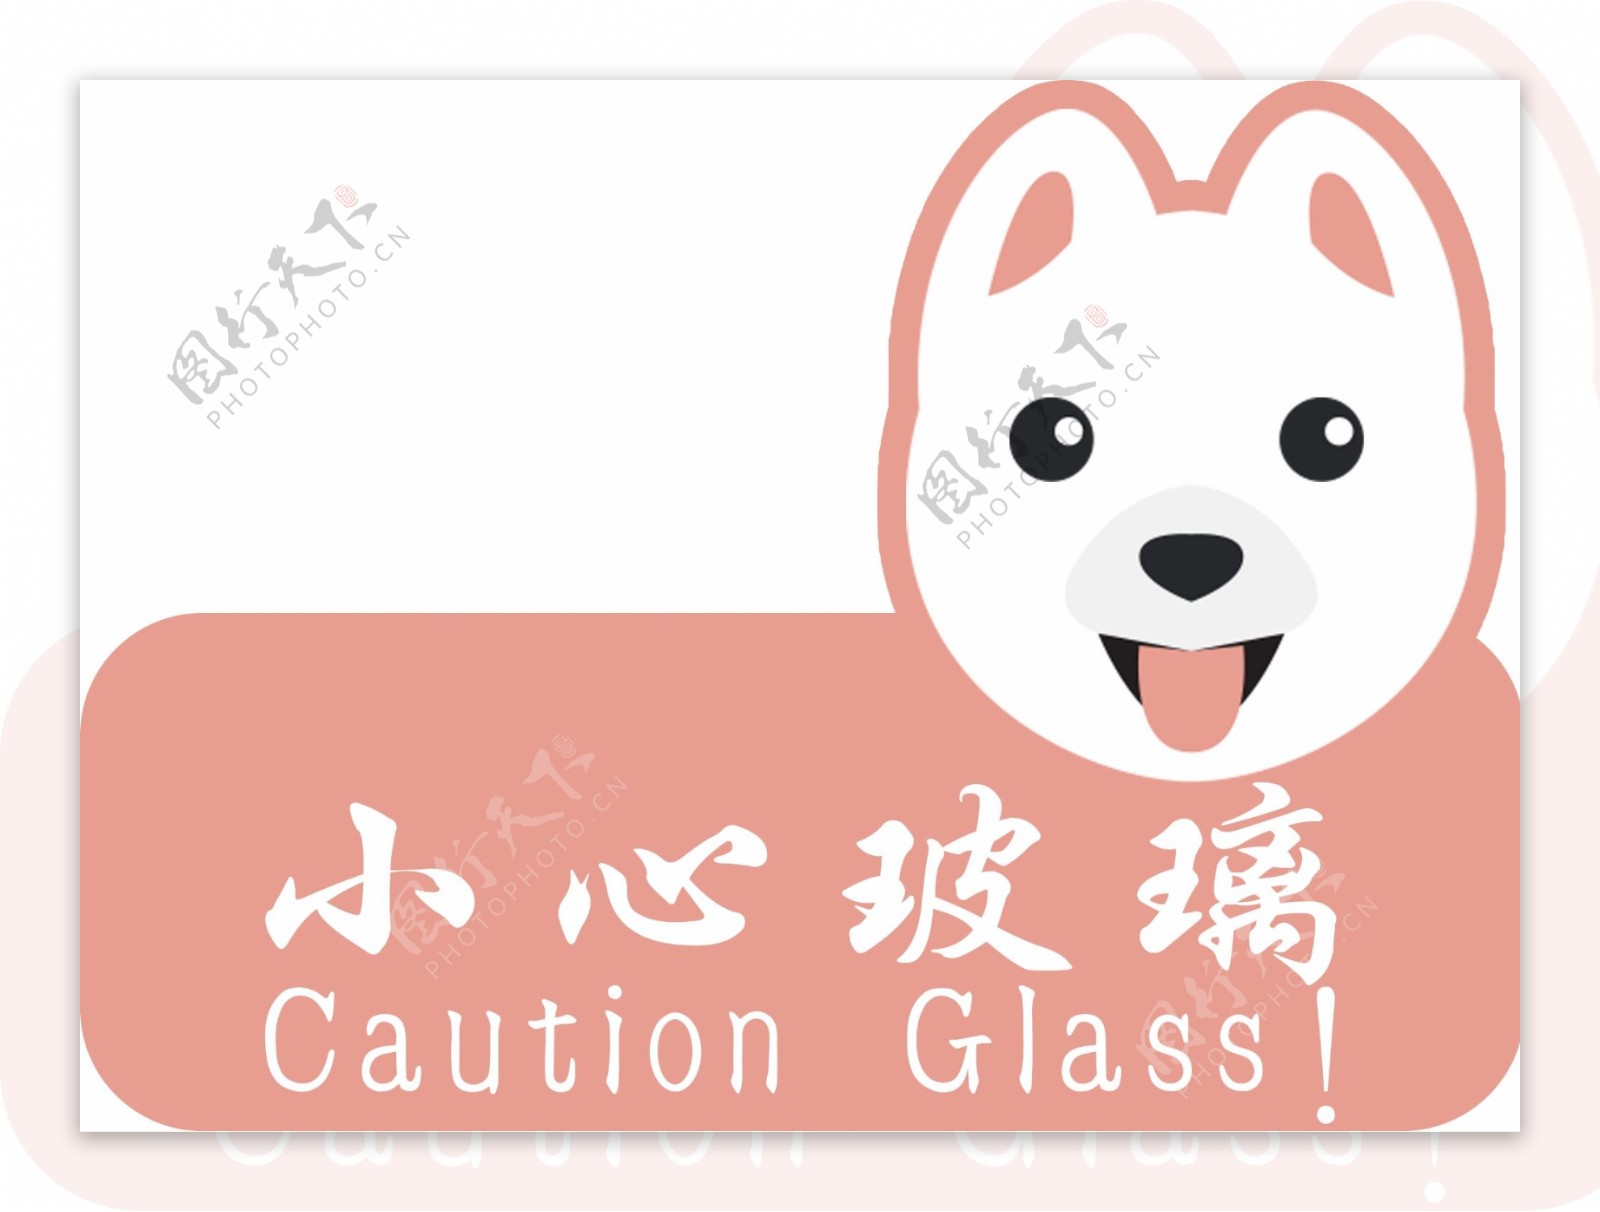 宠物店小心玻璃提示